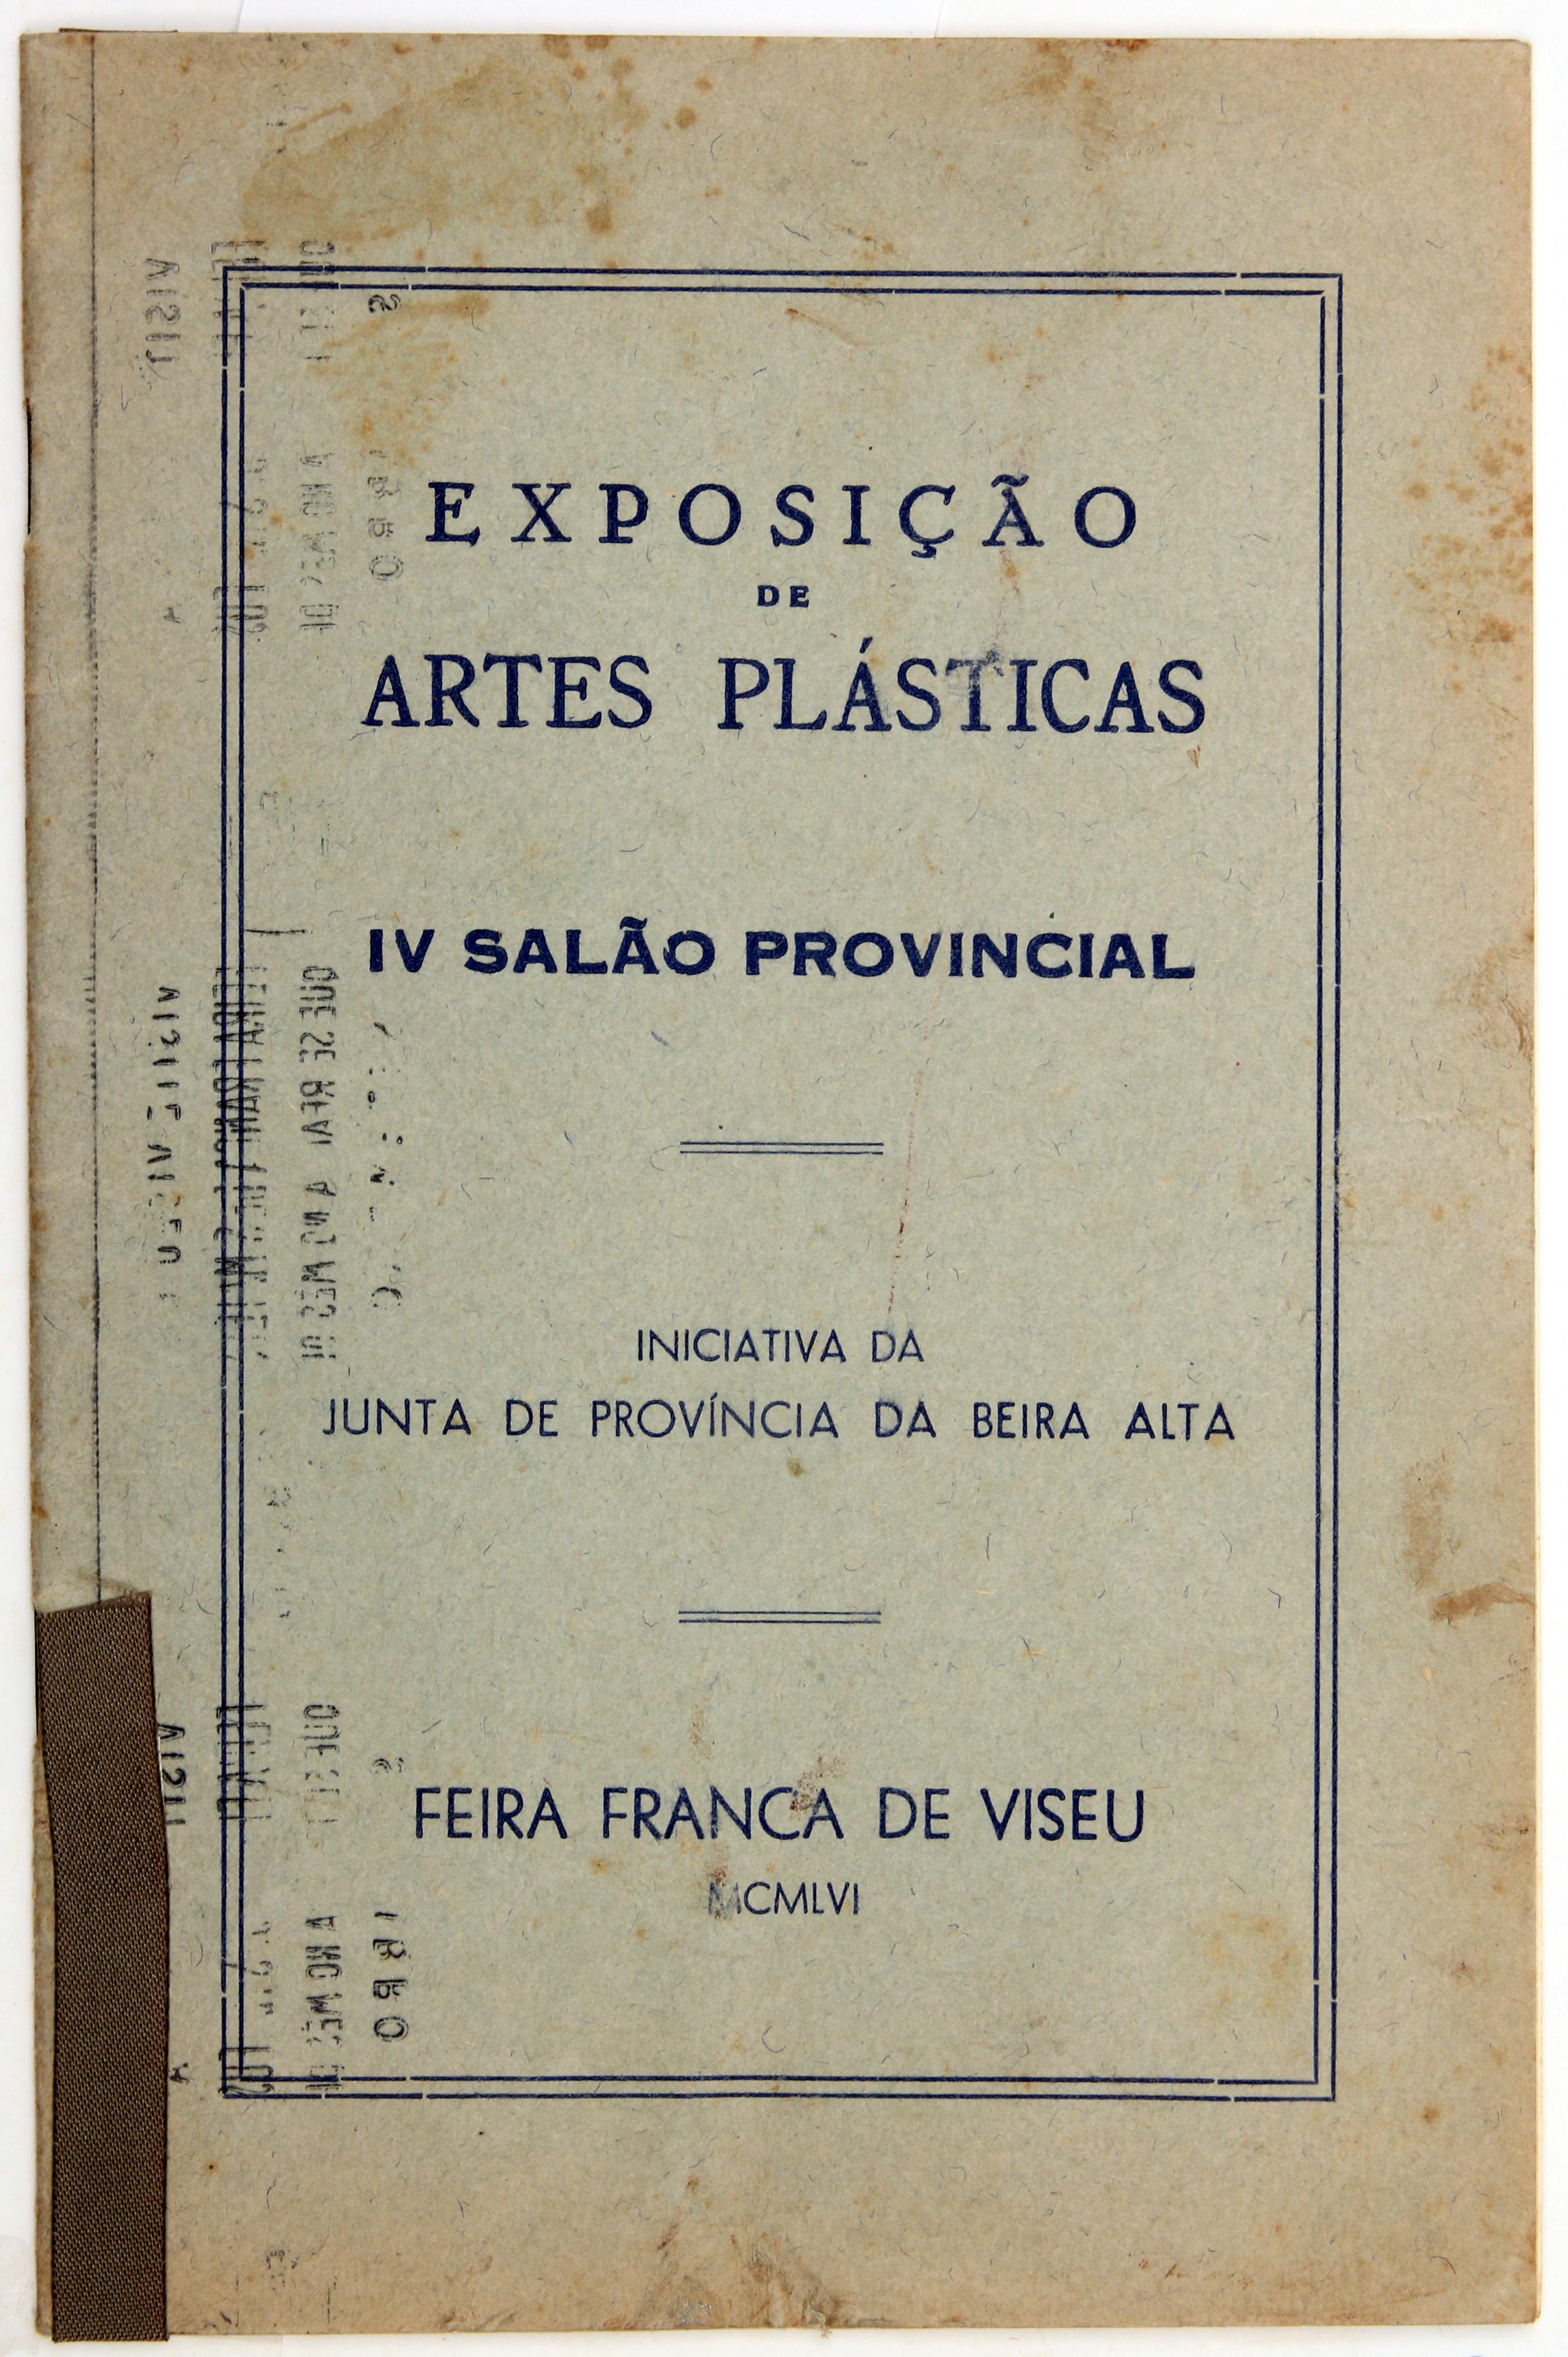 Cruz Caldas (3) : 1946-1965 : Exposição de Artes Plásticas : IV Salão Provincial : Viseu